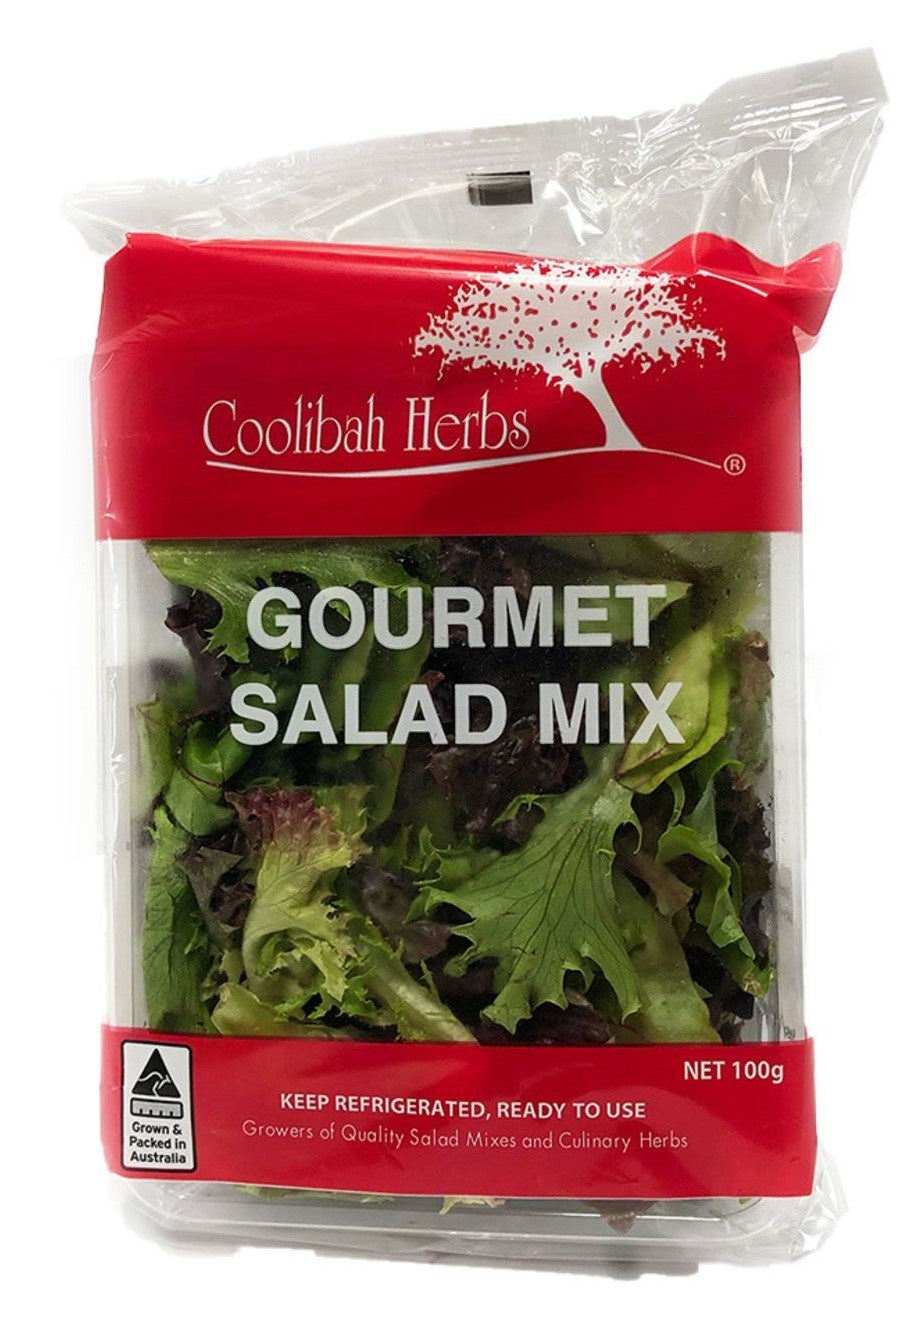 Coolibah Herbs Gourmet Salad Mix 100g